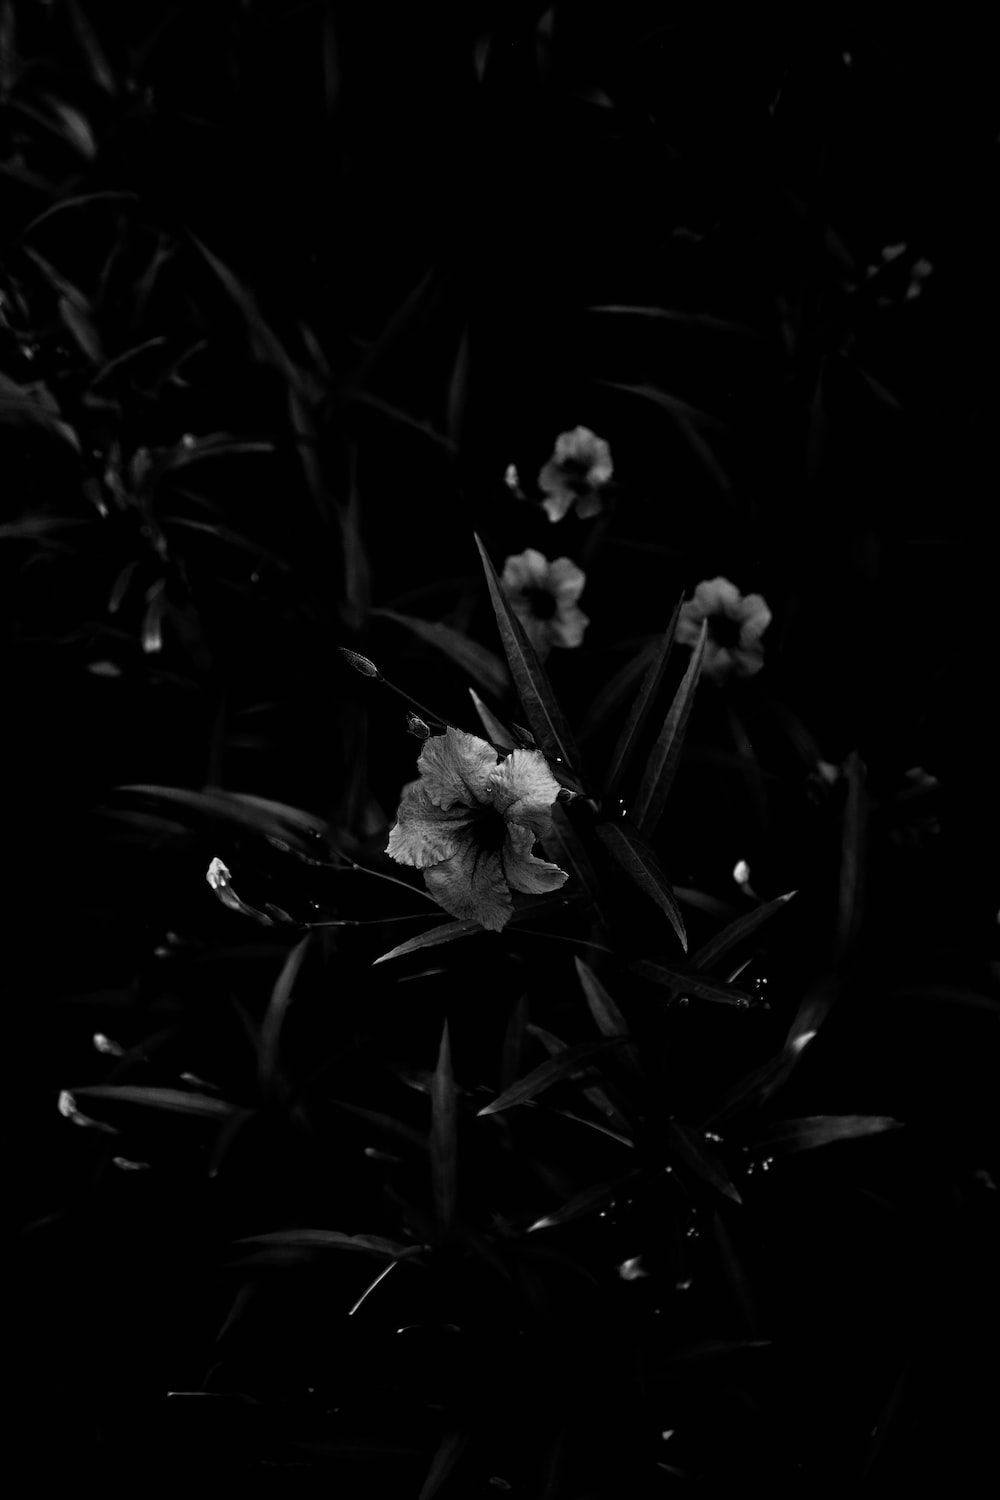  Blumen Schwarz Weiß Hintergrundbild 1000x1500. Foto Zum Thema Ein Schwarz Weiß Foto Von Einigen Blumen